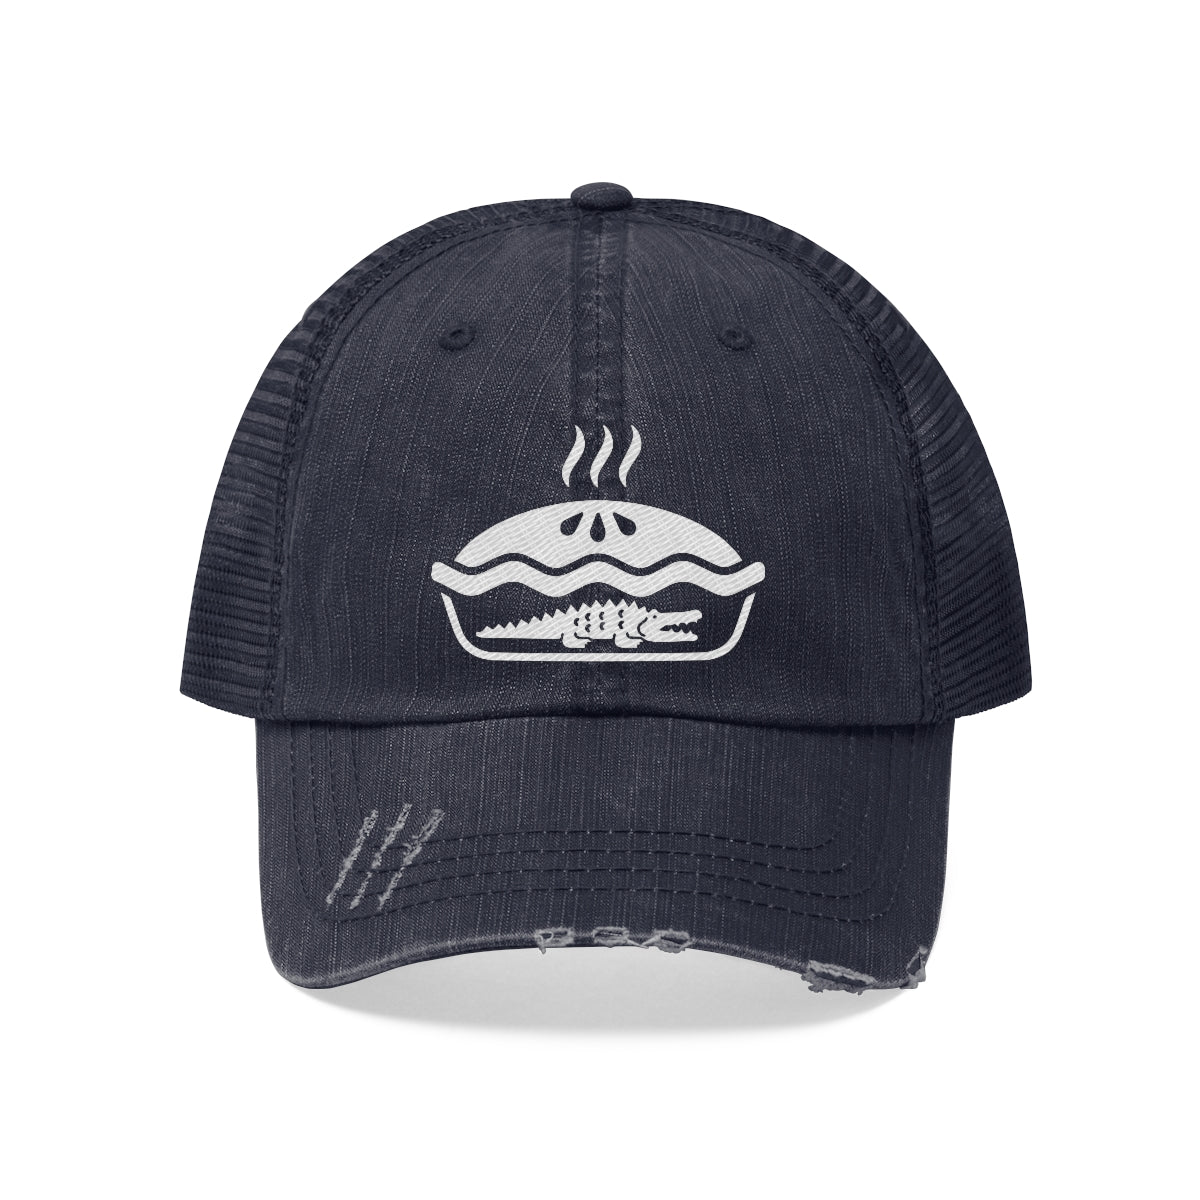 Trucker Style Hat Alligator Pie